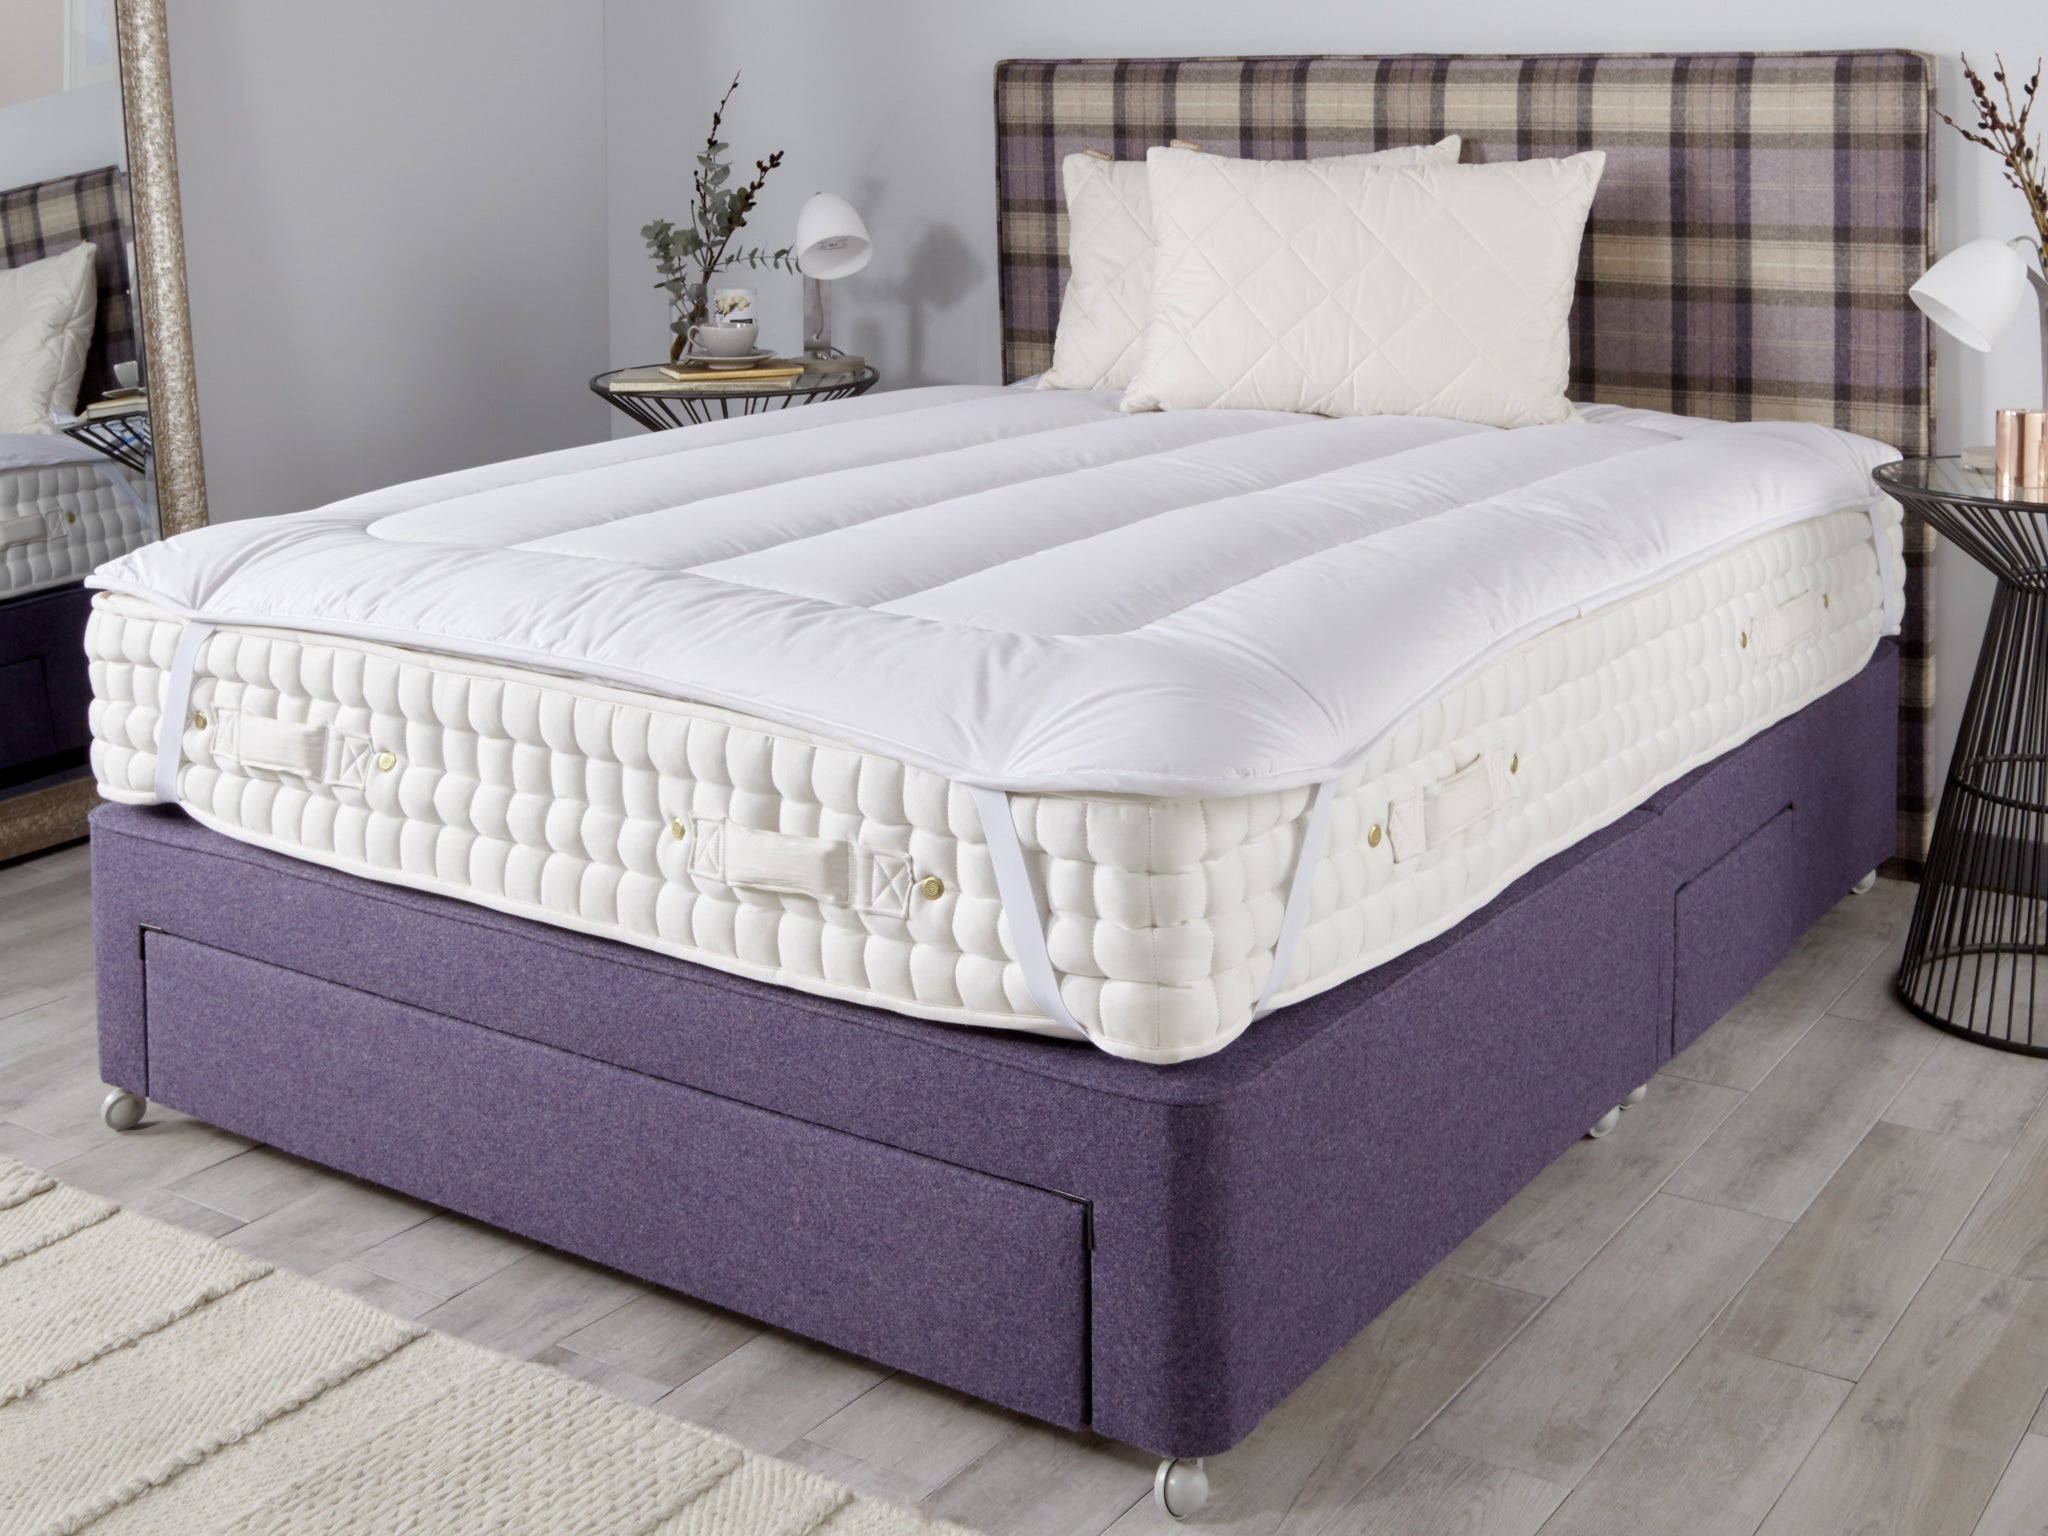 beauty bed mattress topper